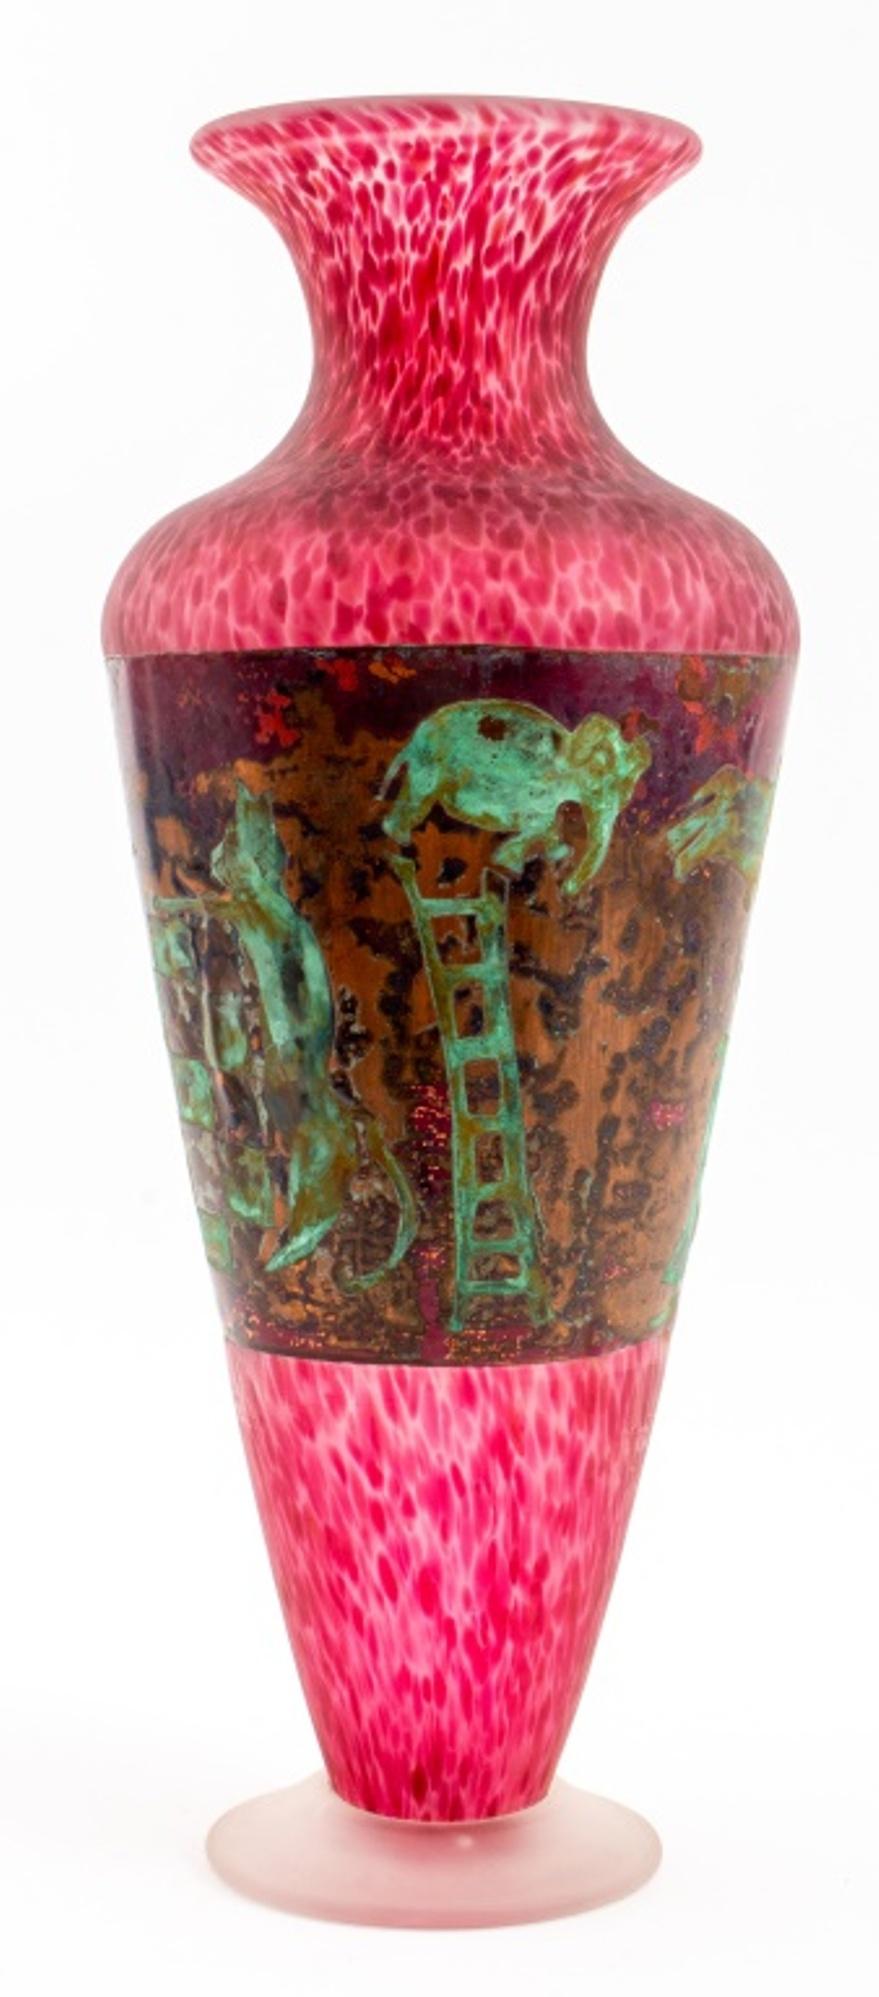 Moderne Studio-Glasvase aus gesprenkeltem rotem Milchglas, montiert mit einer grünspanfarbenen Kupferplatte, die eine surrealistische Szene mit Tieren, Figuren und einem Schachbrettmotiv darstellt, auf einem runden farblosen Milchglasfuß, auf der